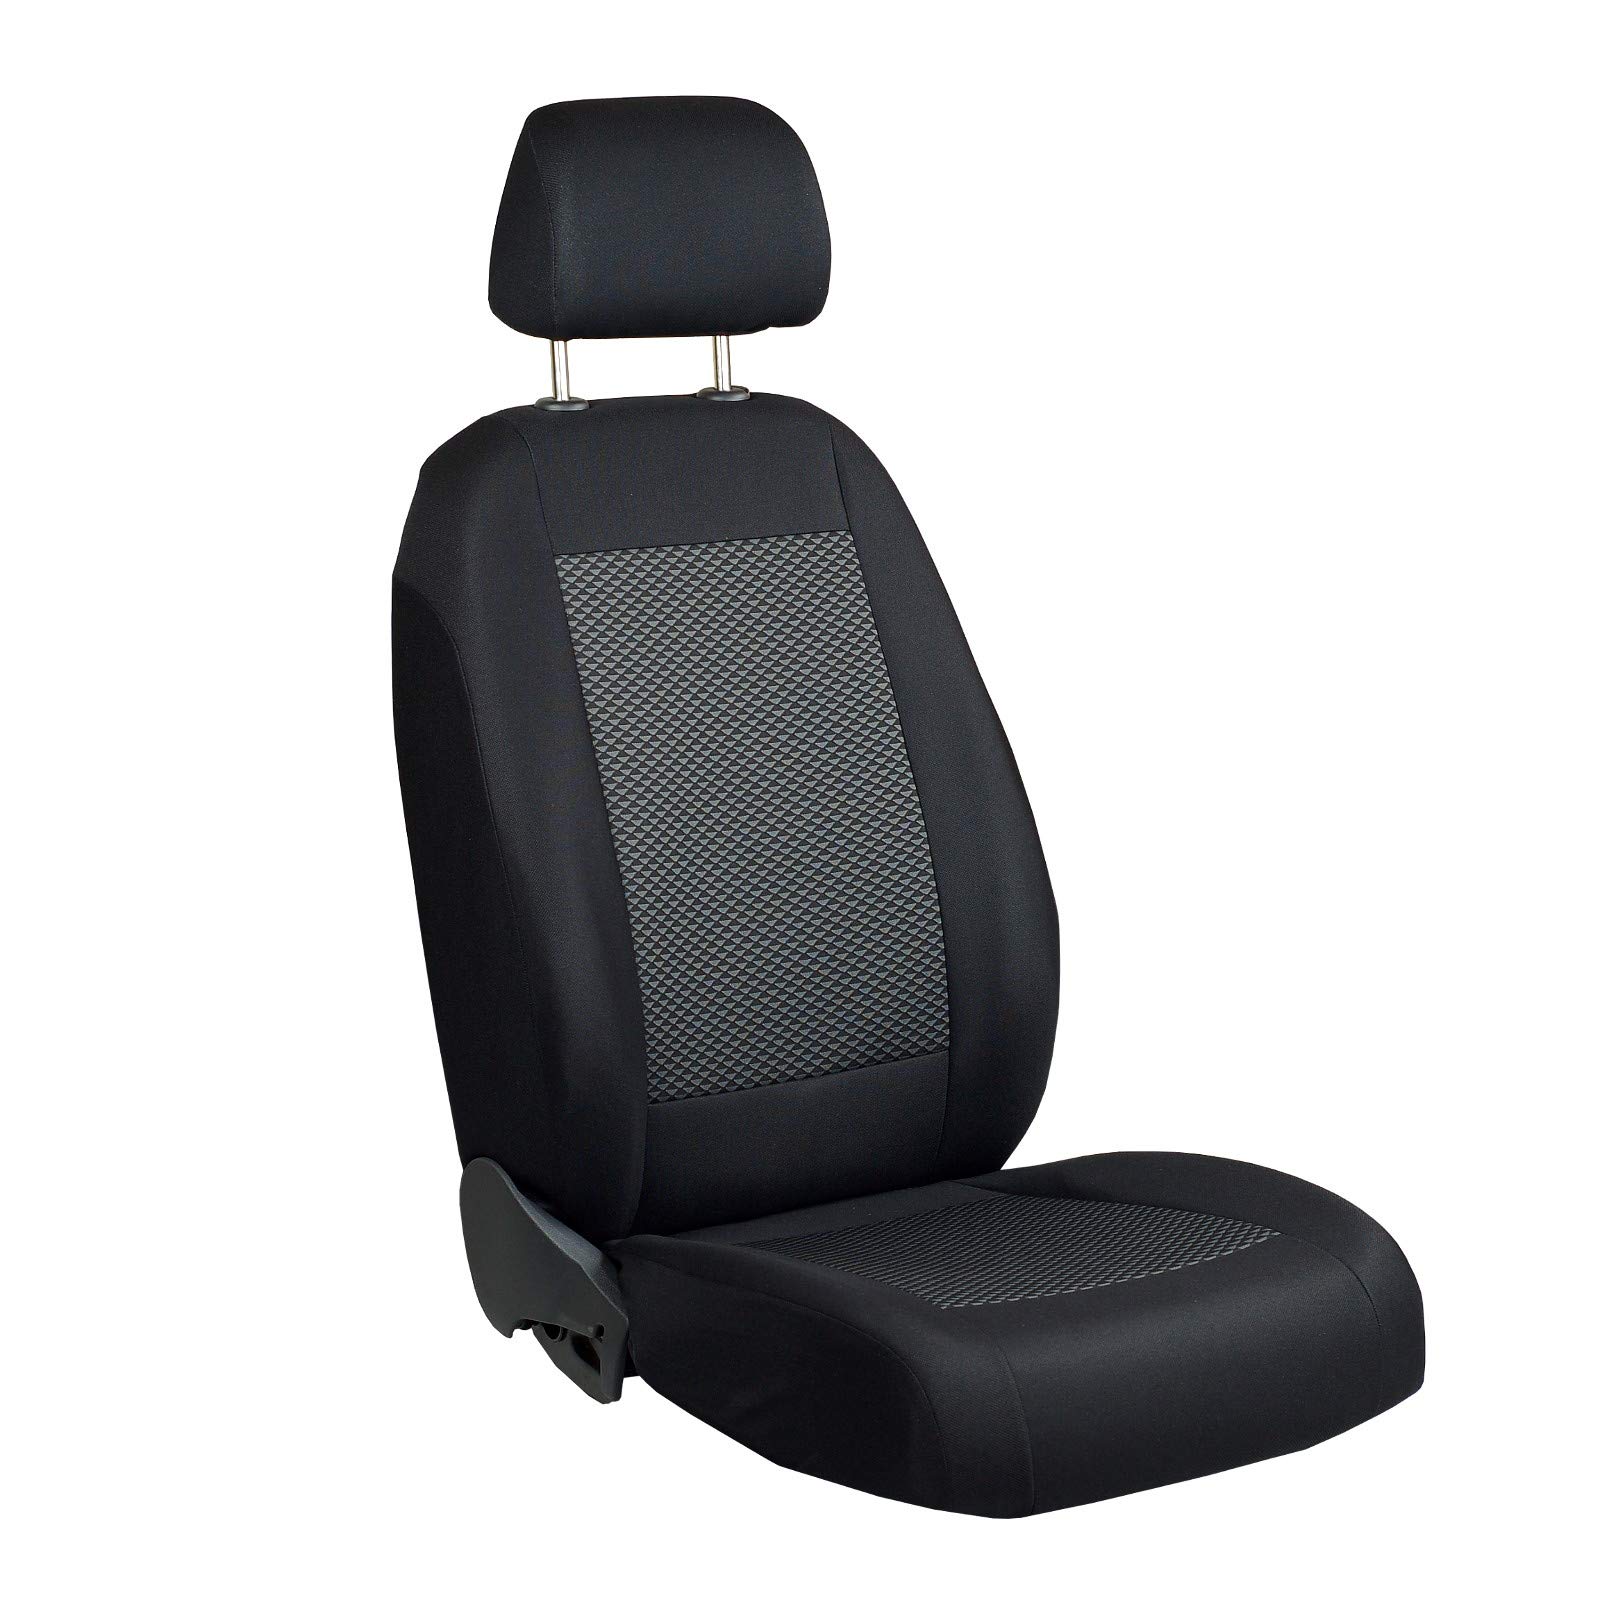 Zakschneider ATEGO Fahrer Sitzbezug - Farbe Premium Schwarz-graue Dreiecke von Zakschneider